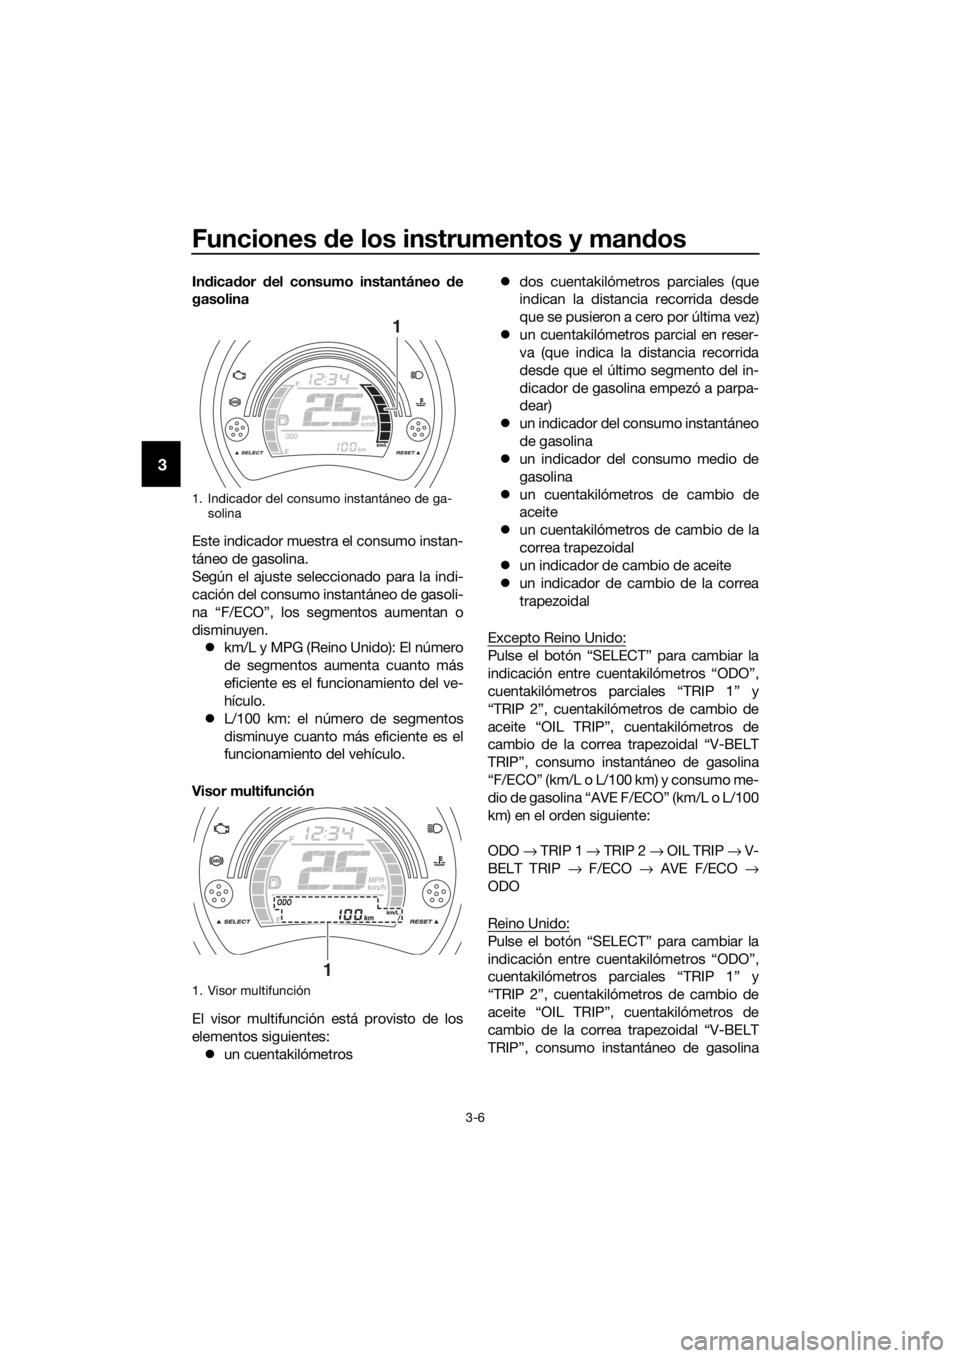 YAMAHA NMAX 150 2019  Instructieboekje (in Dutch) Funciones de los instrumentos y mandos
3-6
3
Indicador del consumo instantáneo de
gasolina
Este indicador muestra el consumo instan-
táneo de gasolina.
Según el ajuste seleccionado para la indi-
ca